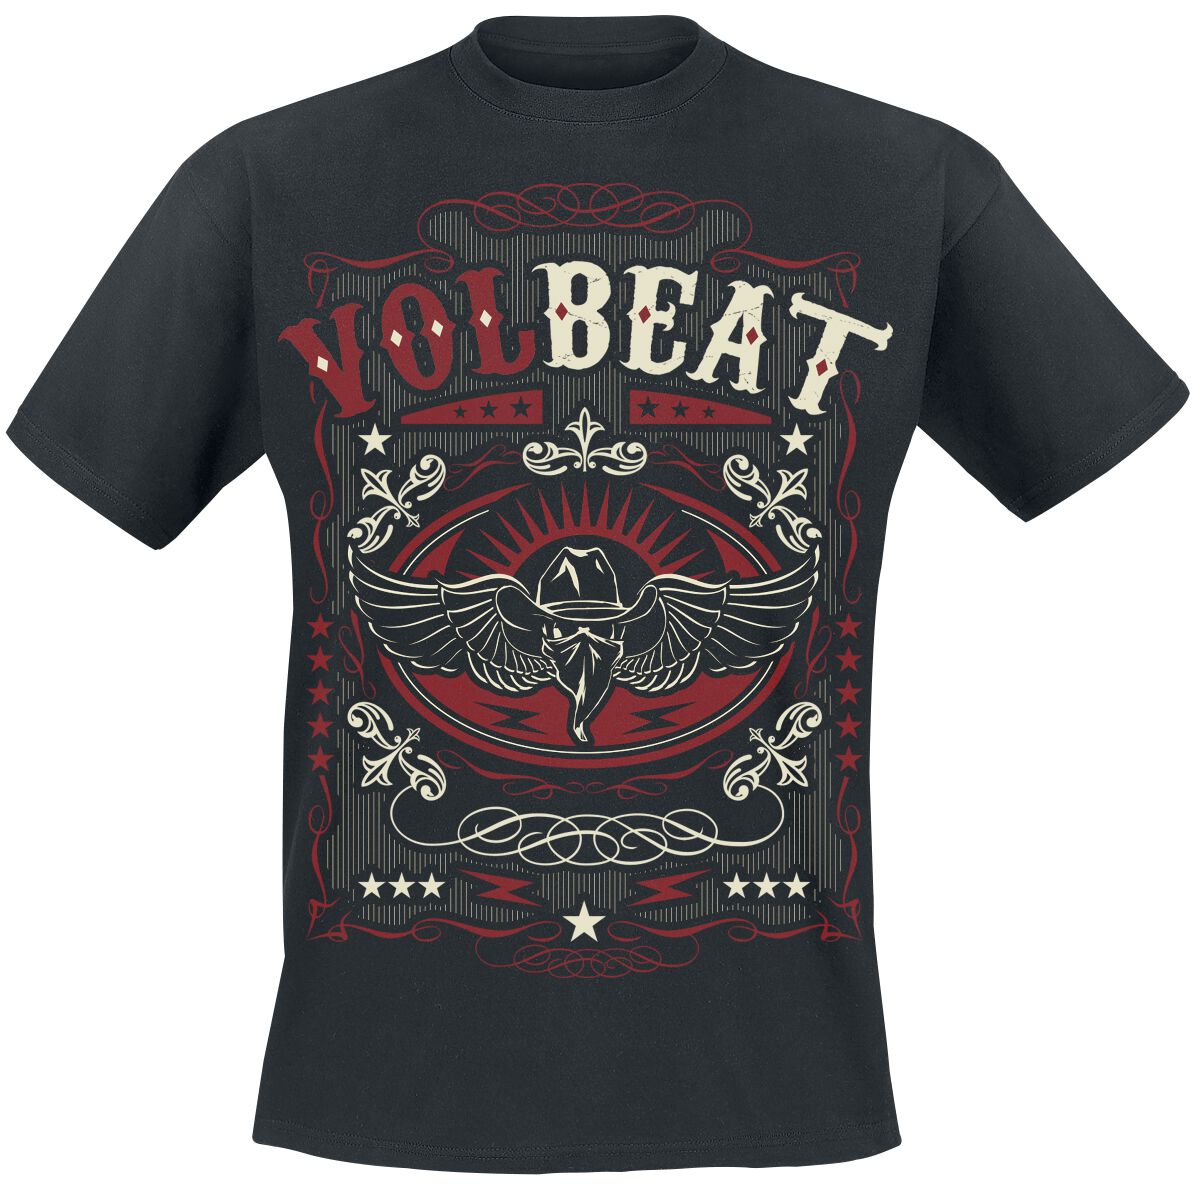 Volbeat T-Shirt - Western Wings Black - M bis 4XL - für Männer - Größe L - schwarz  - EMP exklusives Merchandise!